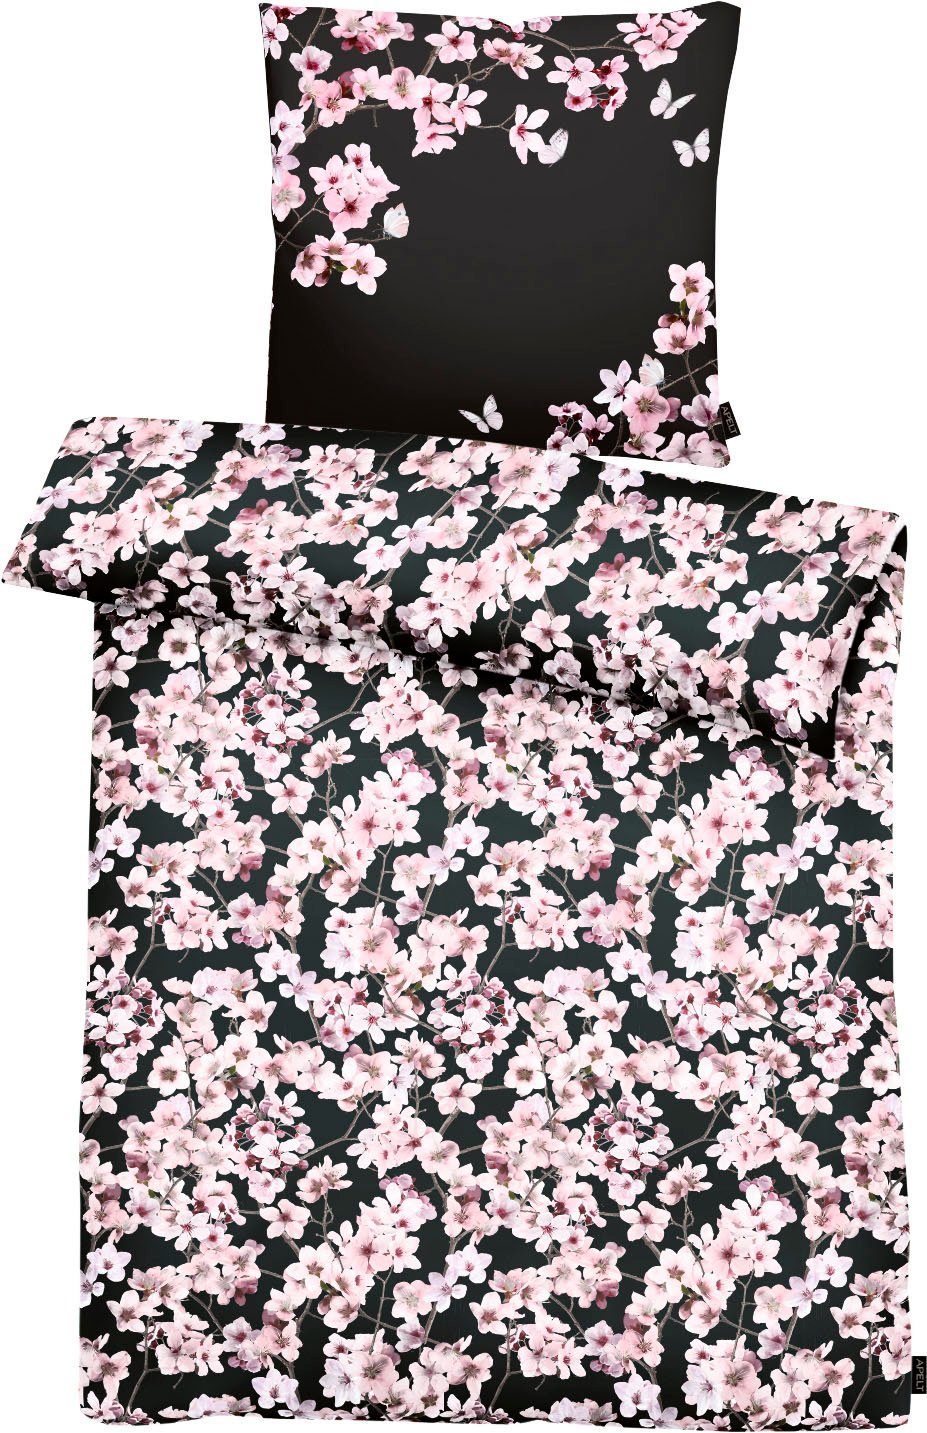 2 Blossom, Kirschblütenzweige, kunstvoll Bettwäsche praktischen Mit Statement, modische APELT, Mako-Satin, teilig, ausgestattet gemalte ein Reißverschlüssen